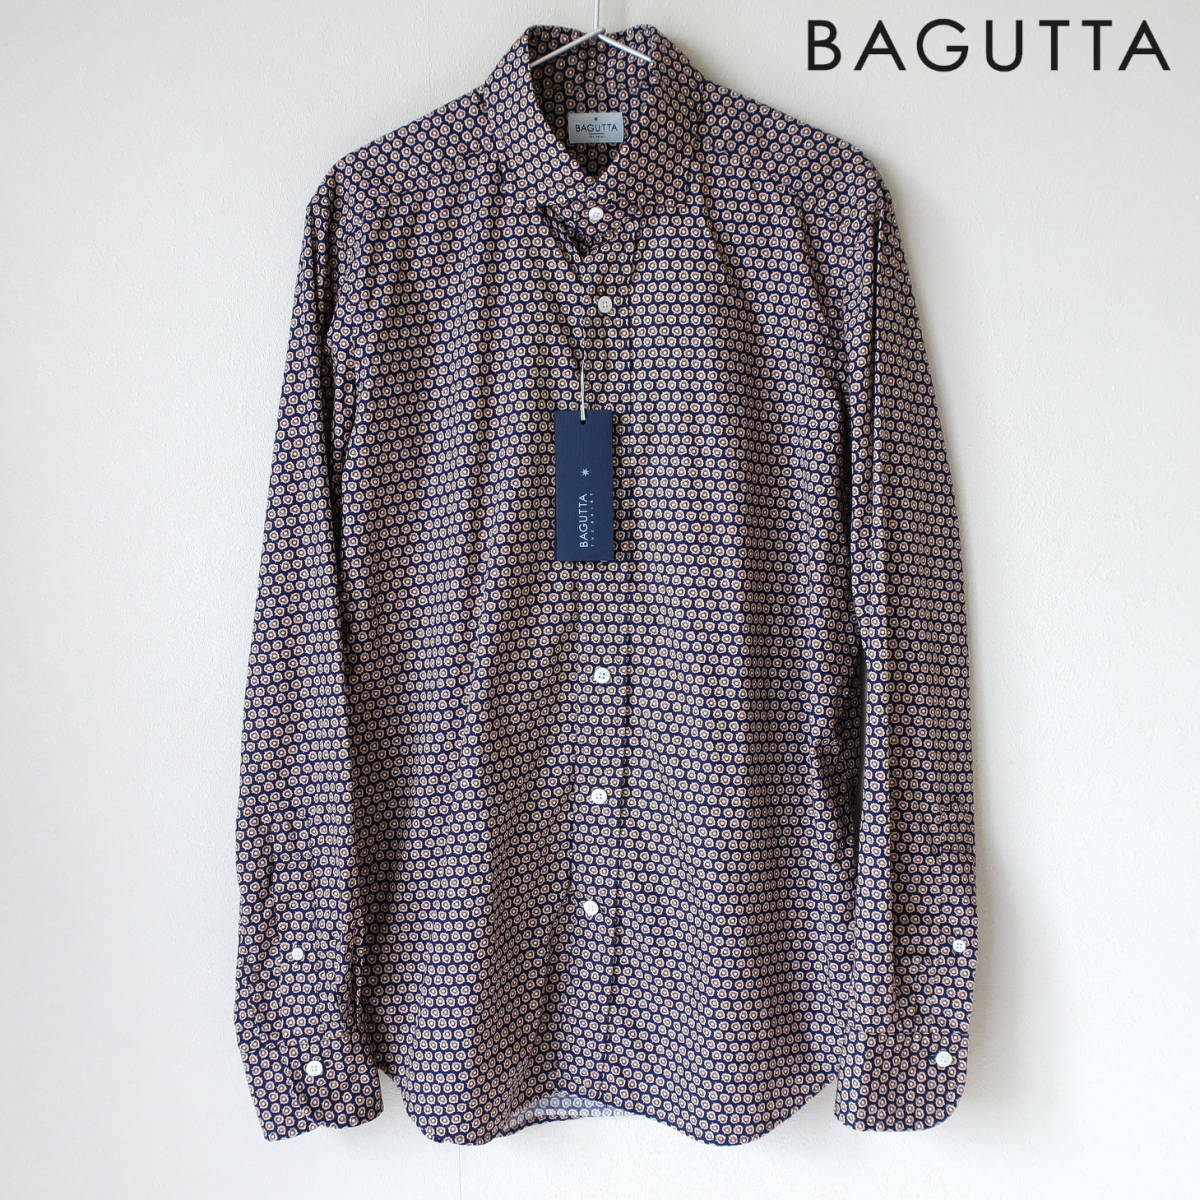 新品 BAGUTTA バグッタ 高級 メンズ ドレスシャツ 総柄 ネイビー ブラウン 長袖 ボタン シャツ ワイドカラー 39 Mサイズ Lサイズ